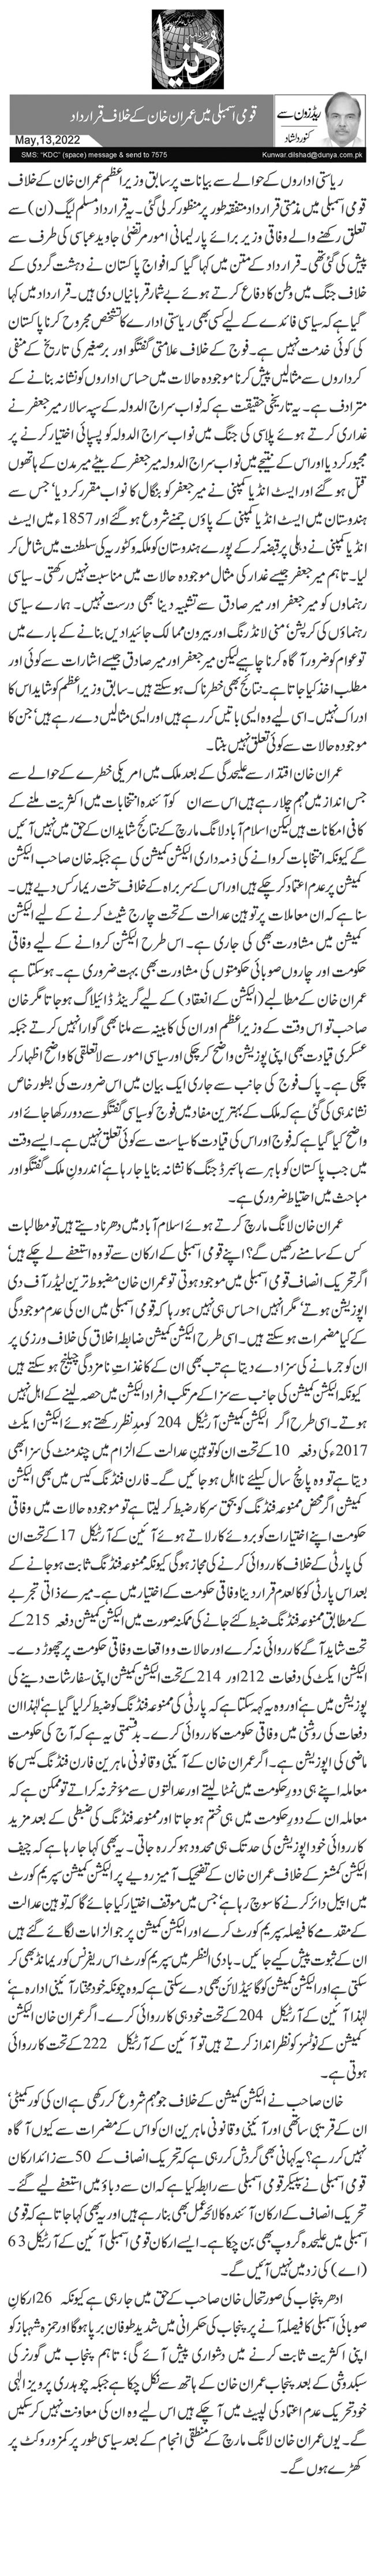 قومی اسمبلی میں عمران خان کے خلاف قرارداد